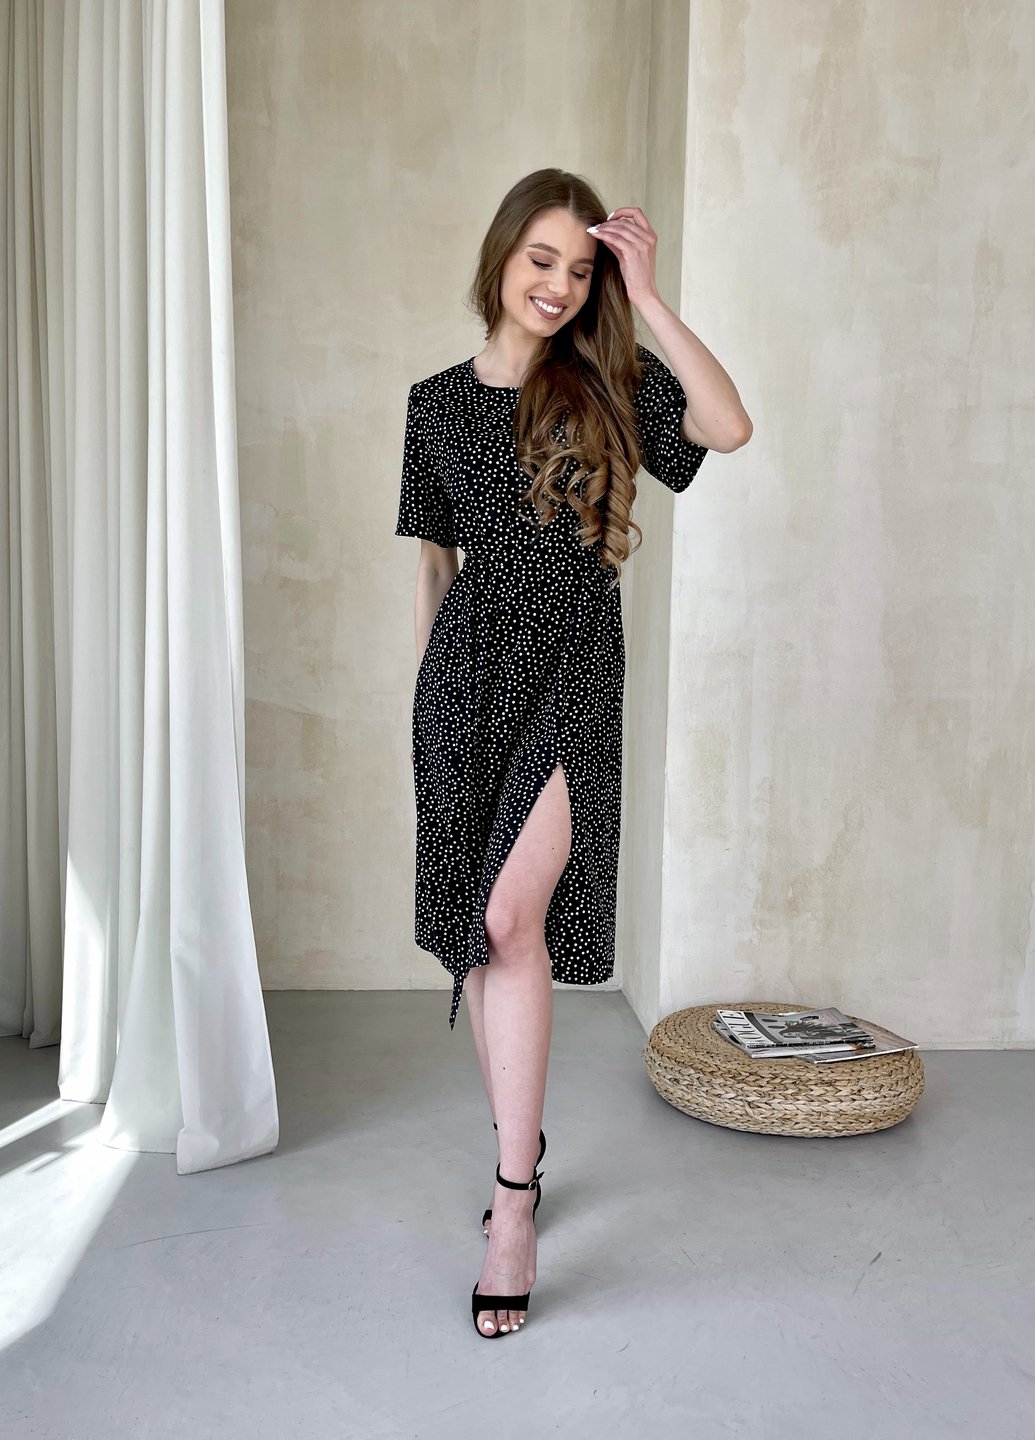 Купить Женское платье до колена в горох с разрезом и пояском черное Merlini Асти 700000201, размер 42-44 (S-M) в интернет-магазине